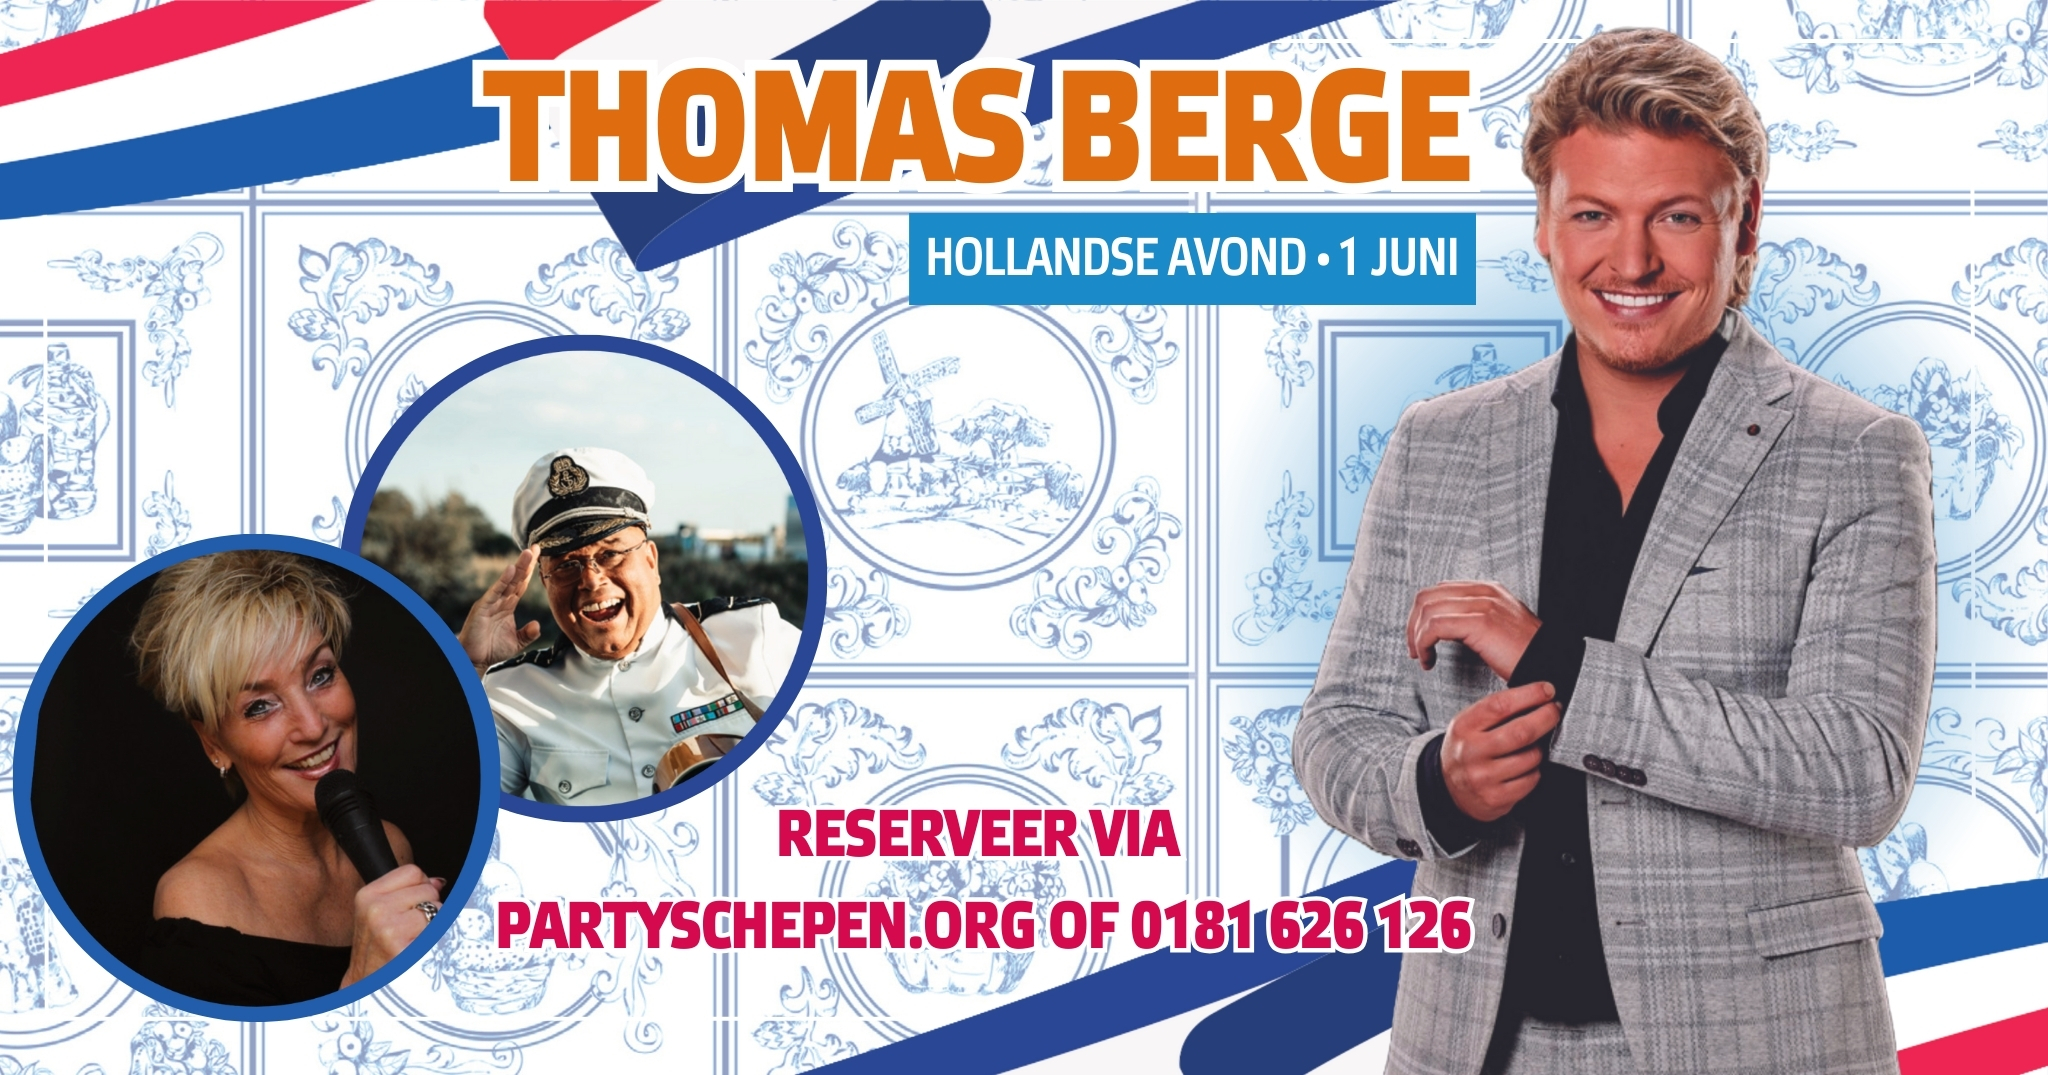 Hollandse avond met Thomas Berge!